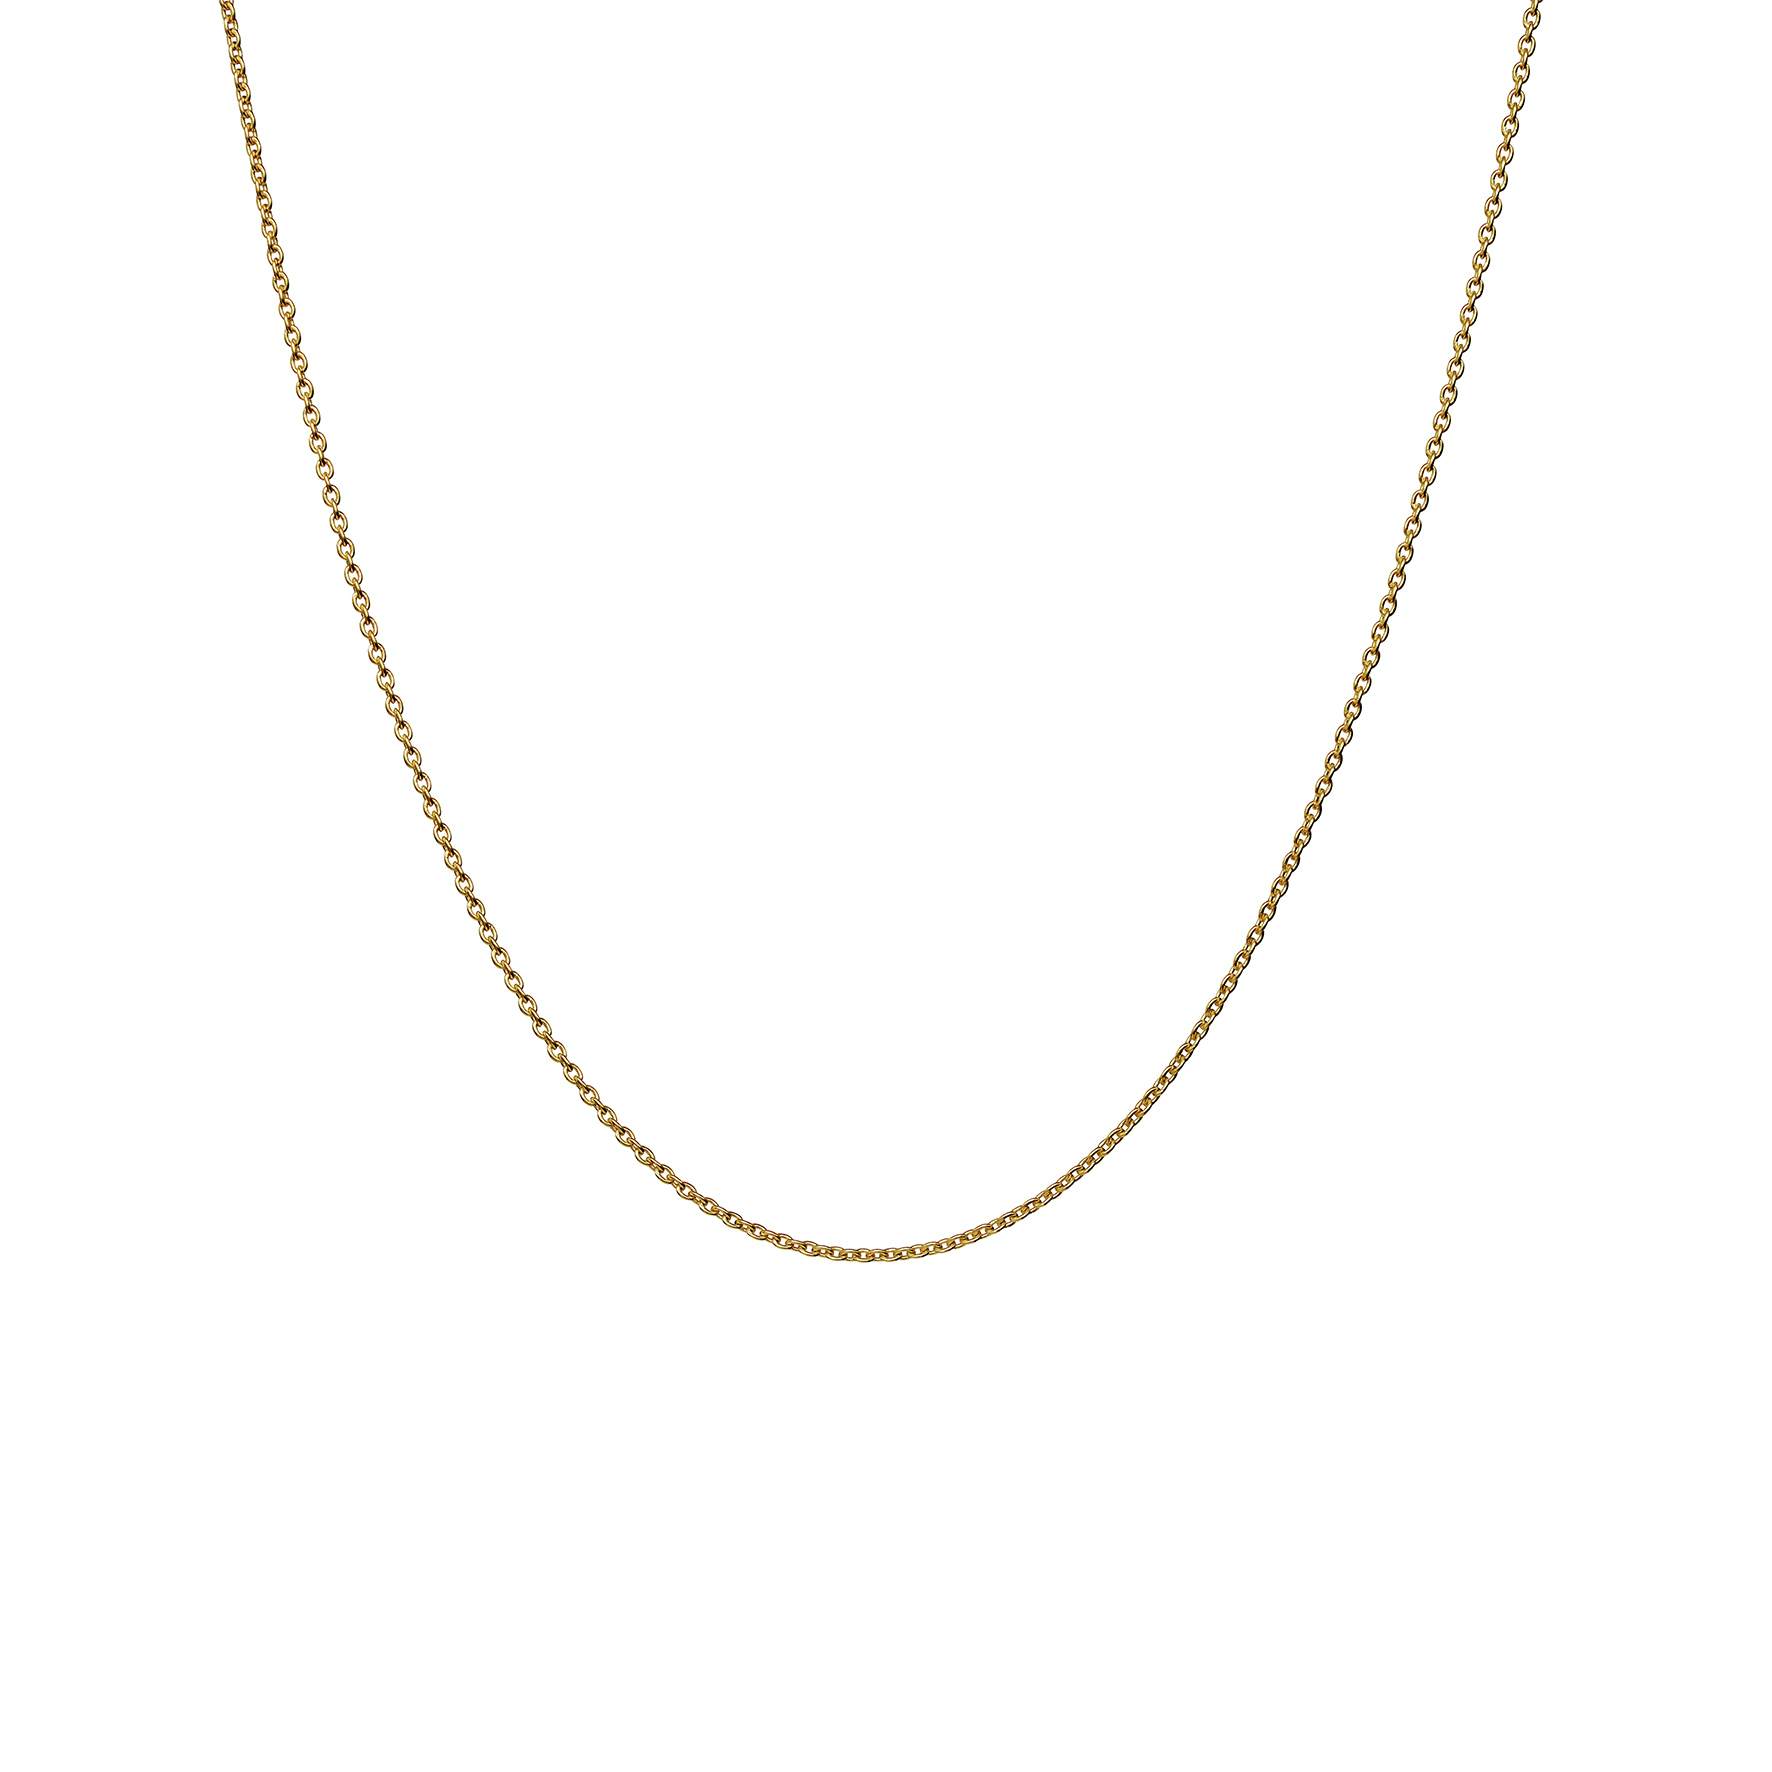 Charlie Medium Necklace von Maanesten in Vergoldet-Silber Sterling 925